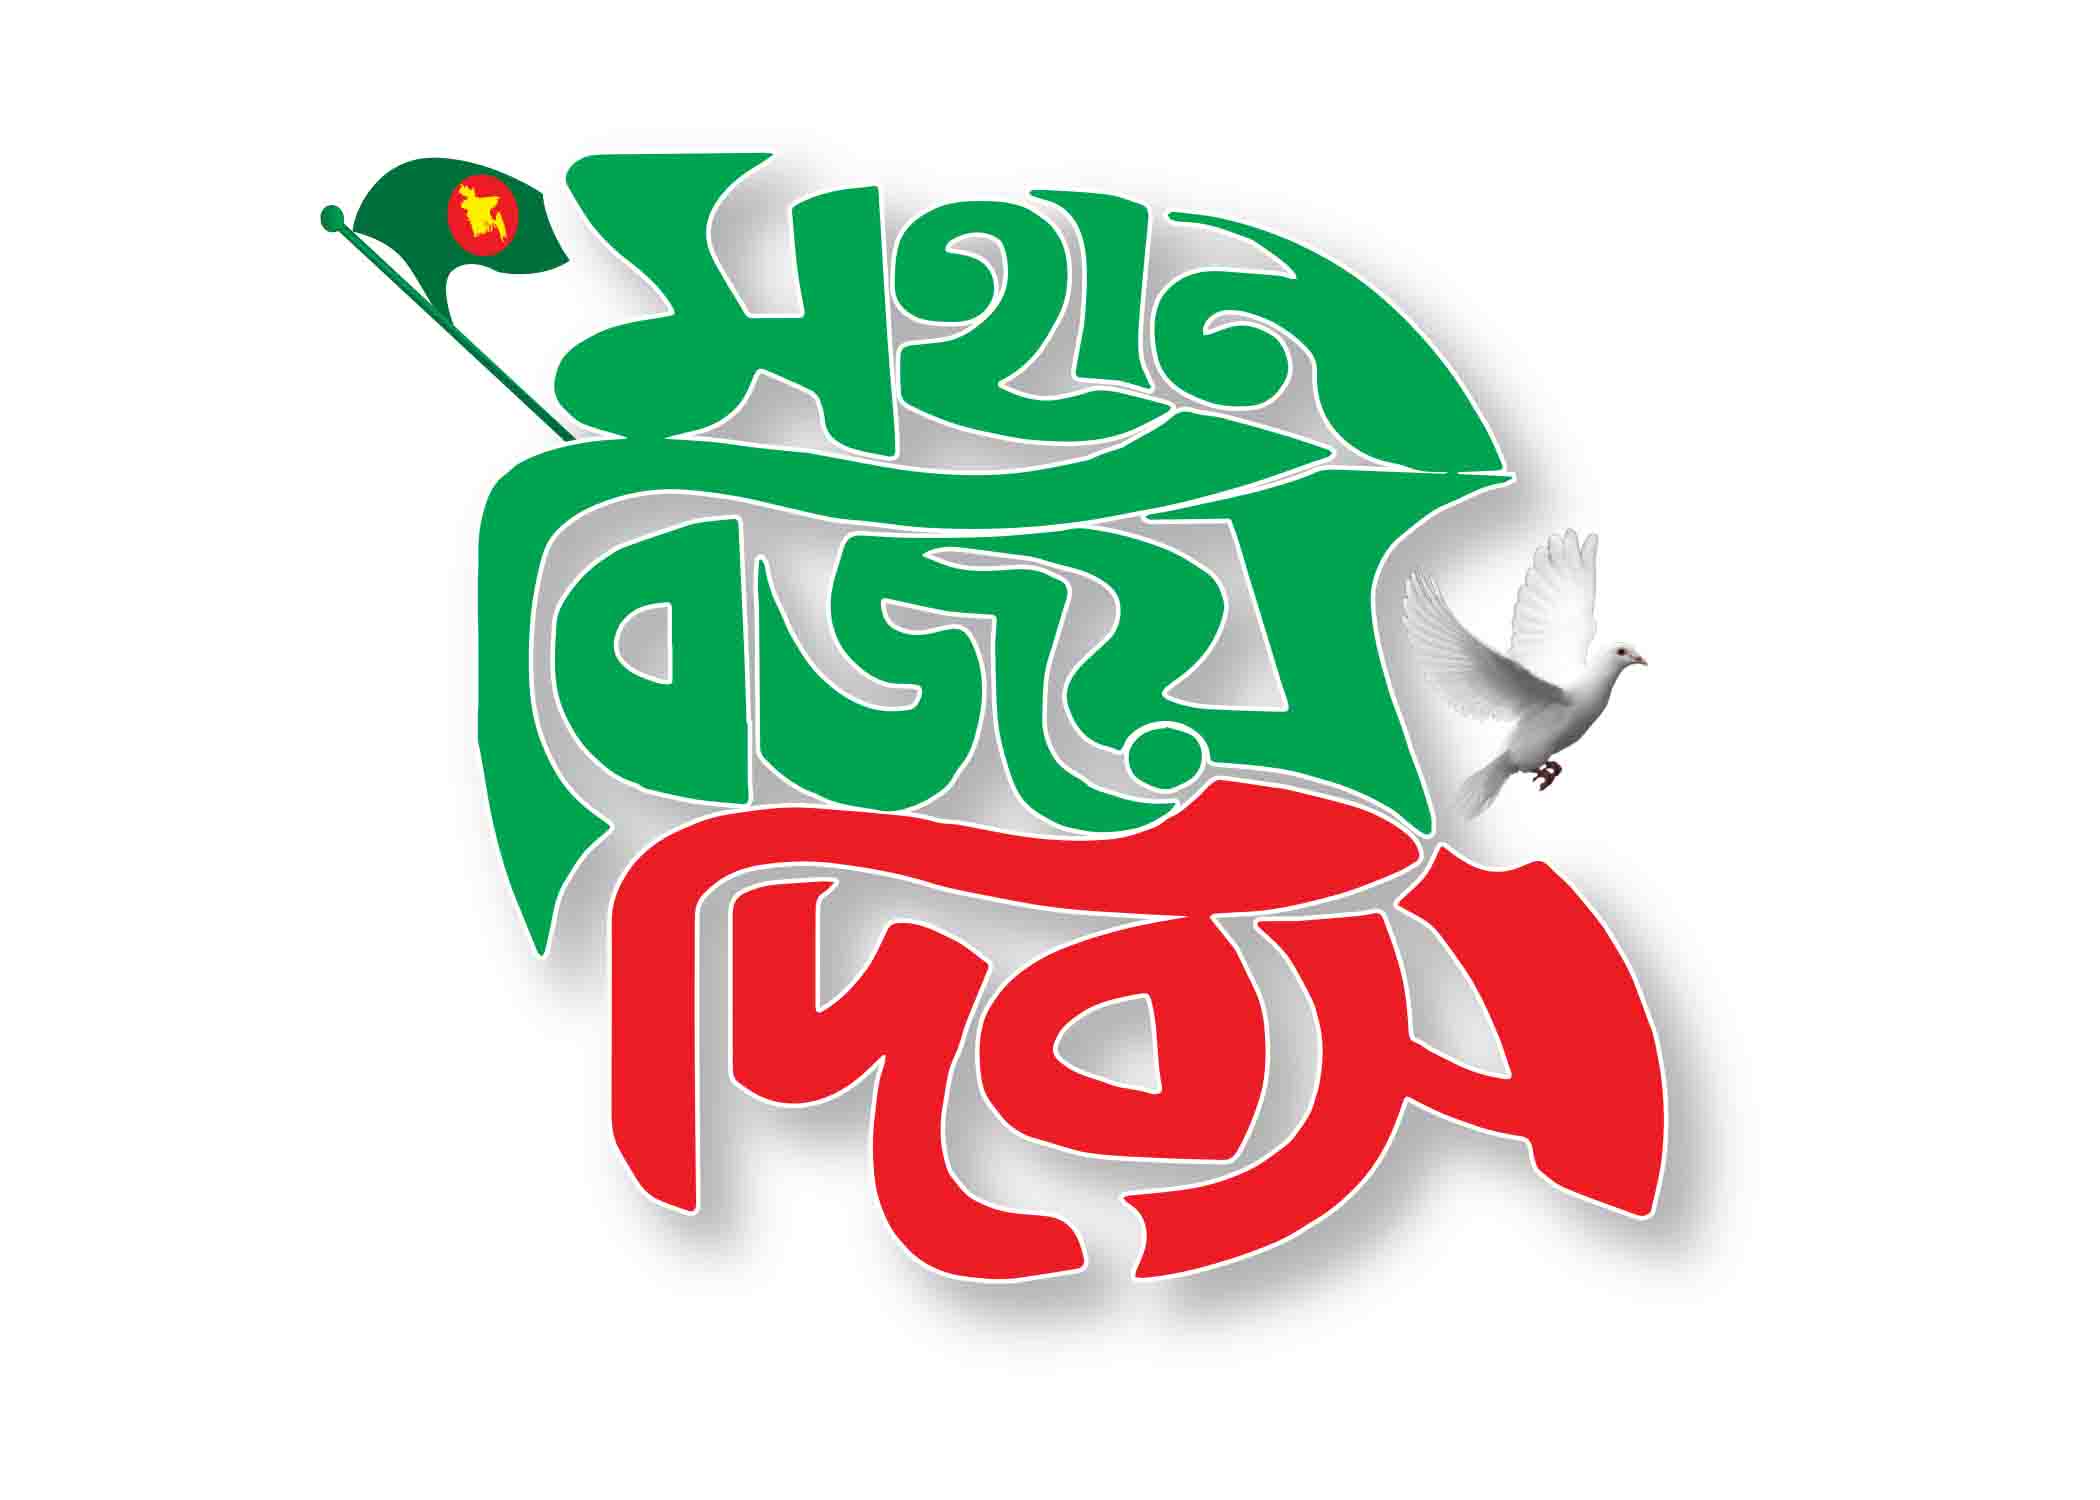 মহান বিজয় দিবস টাইপোগ্রাফি । Bangla Typography PNG